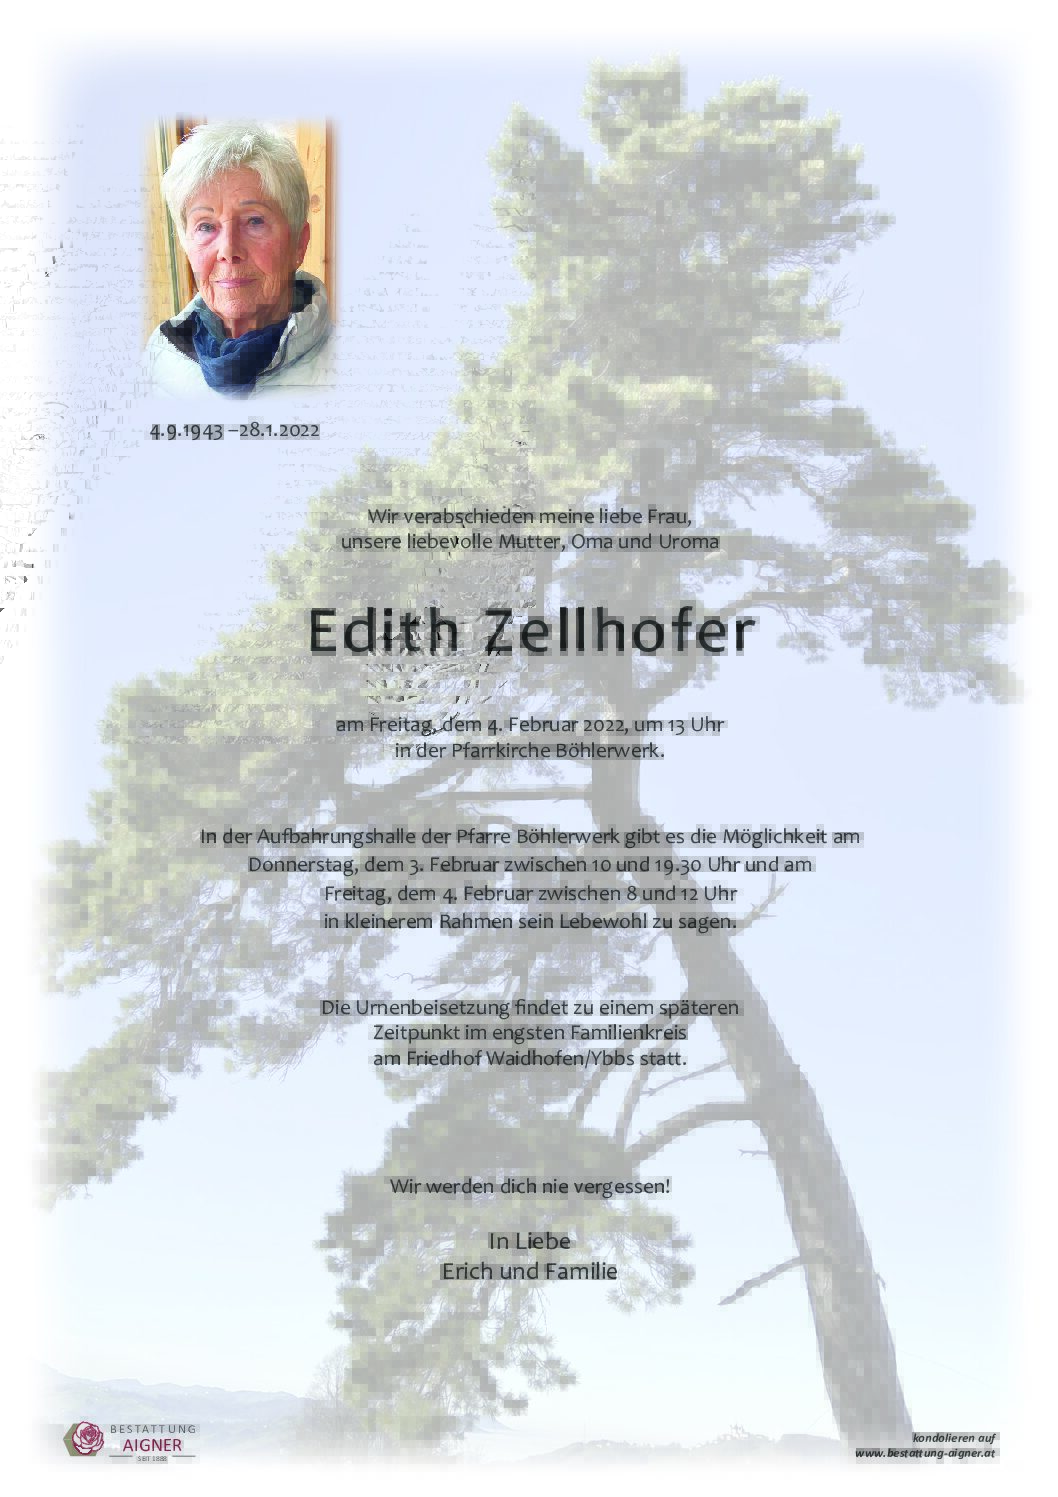 Edith Zellhofer